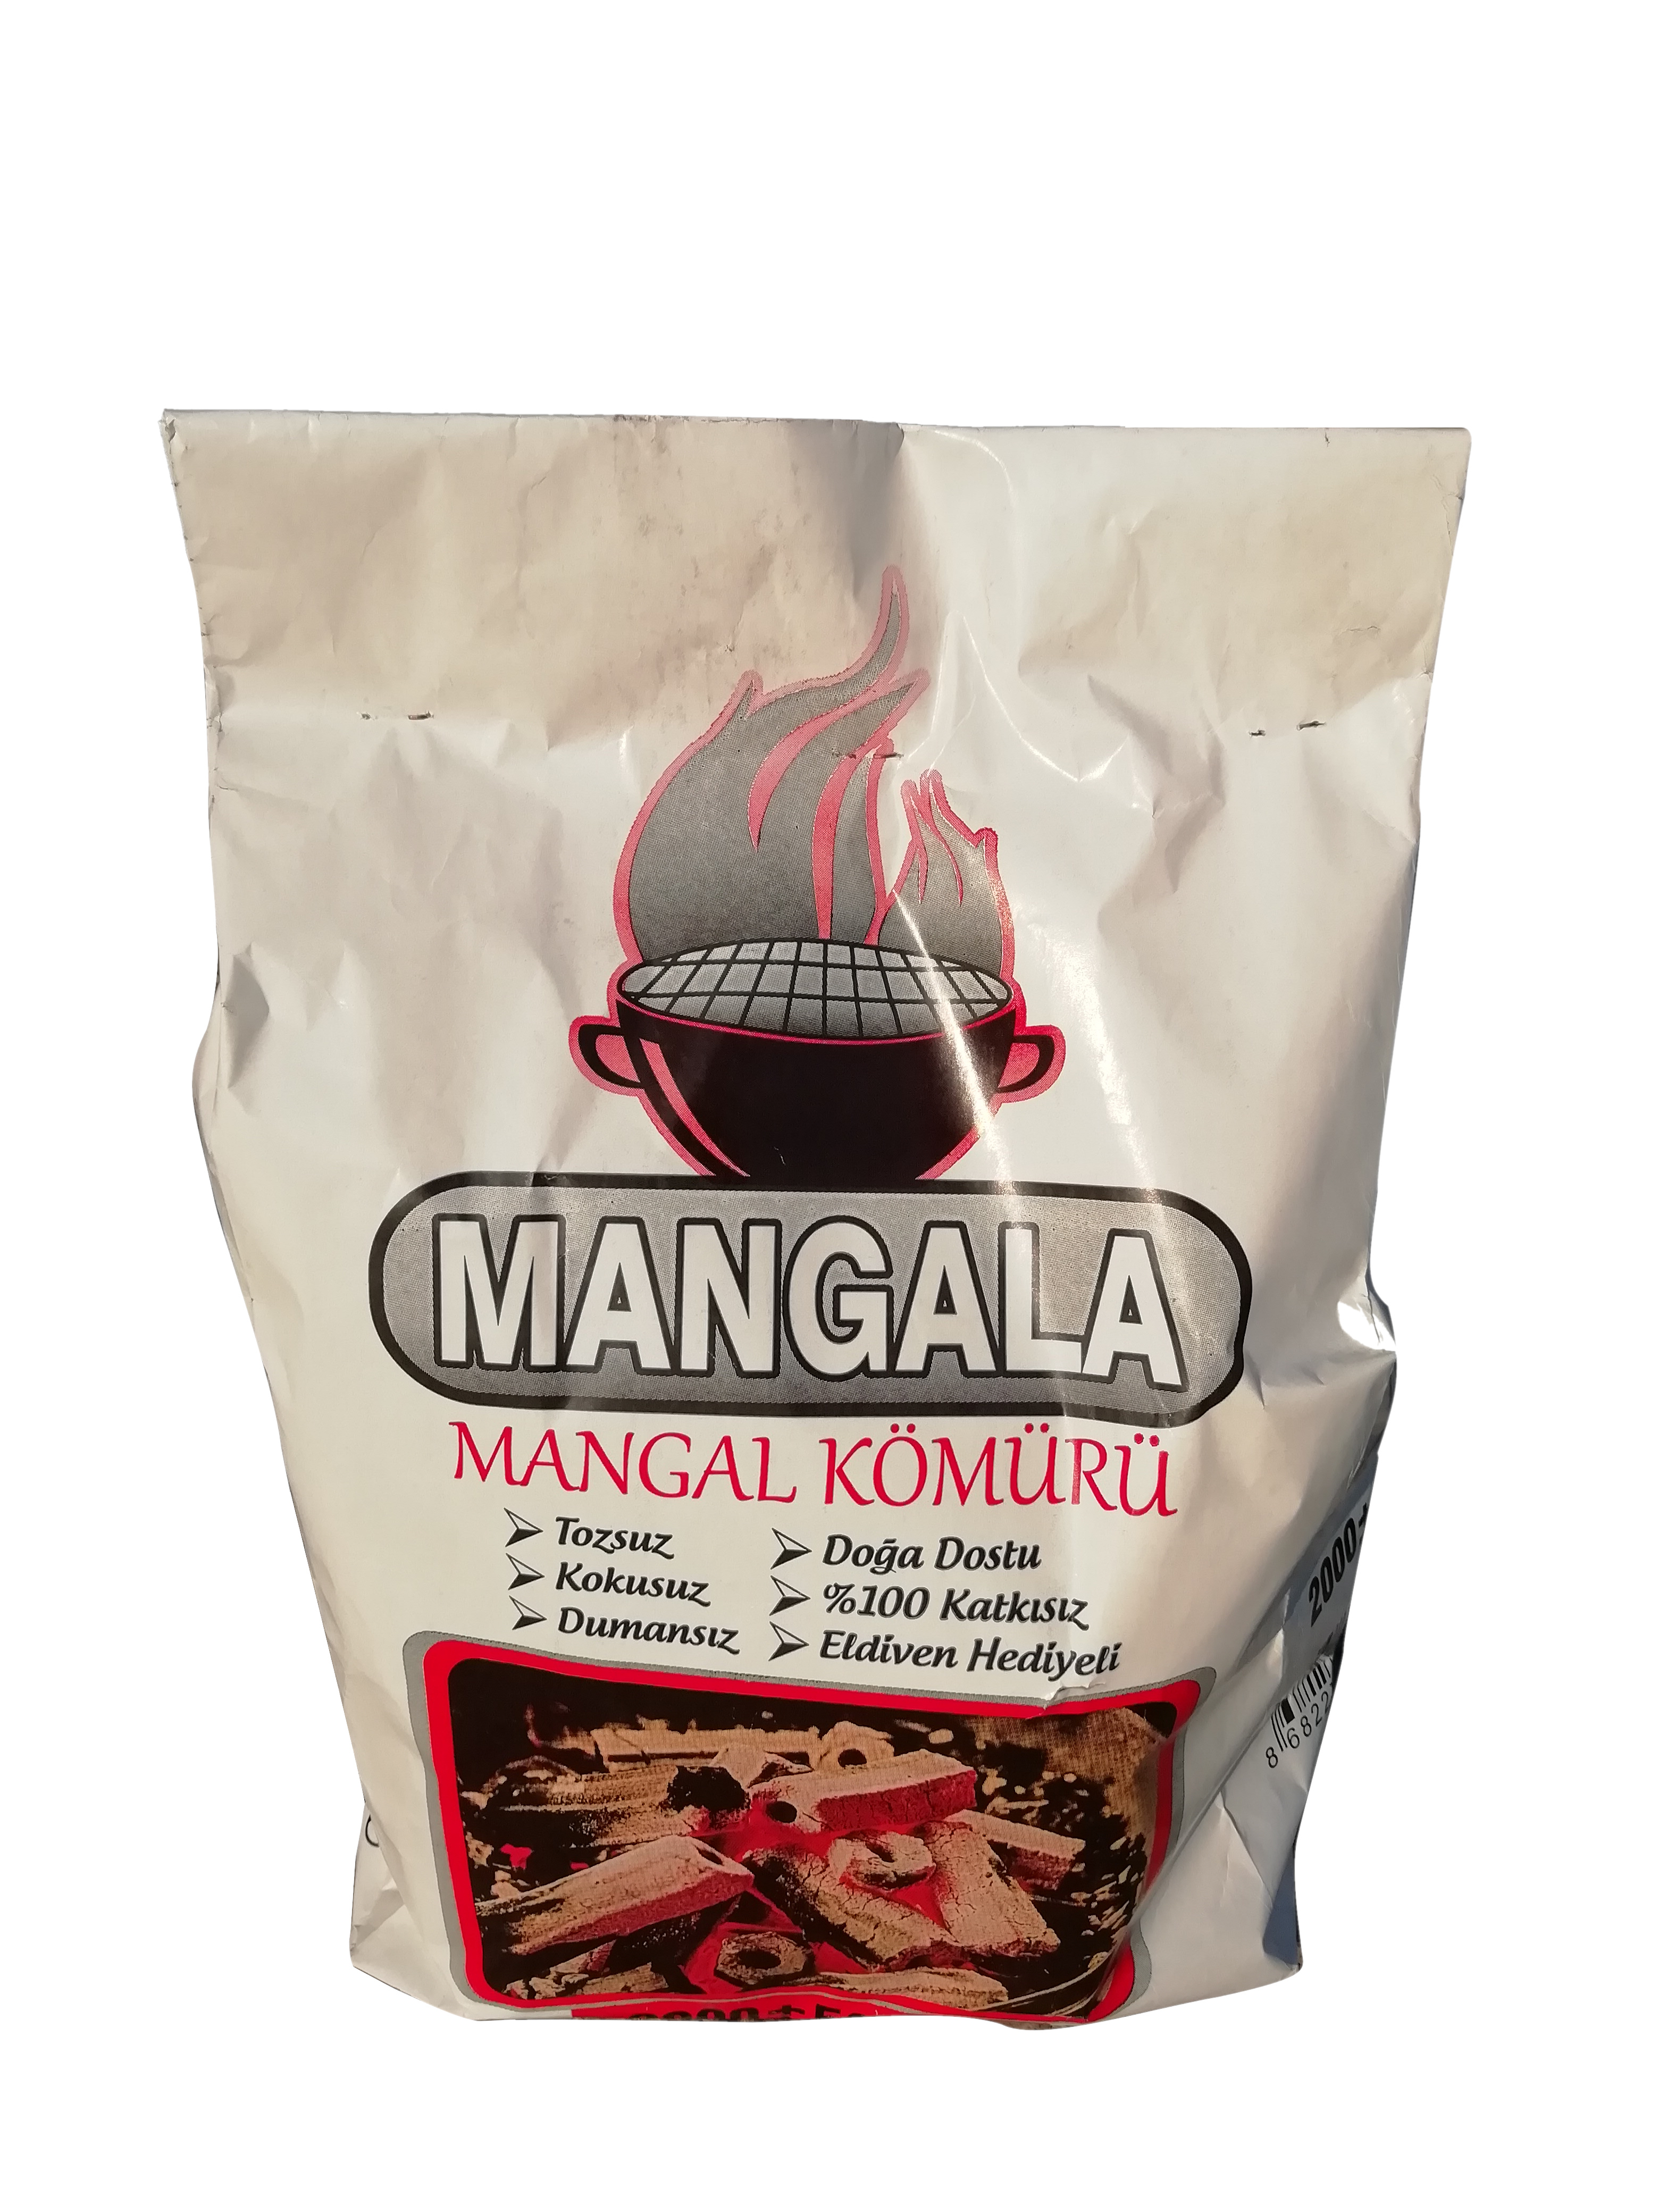 Mangala Mangal Kömürü 2 Kglık 5 Paket Dumansız, %100 Katkısız